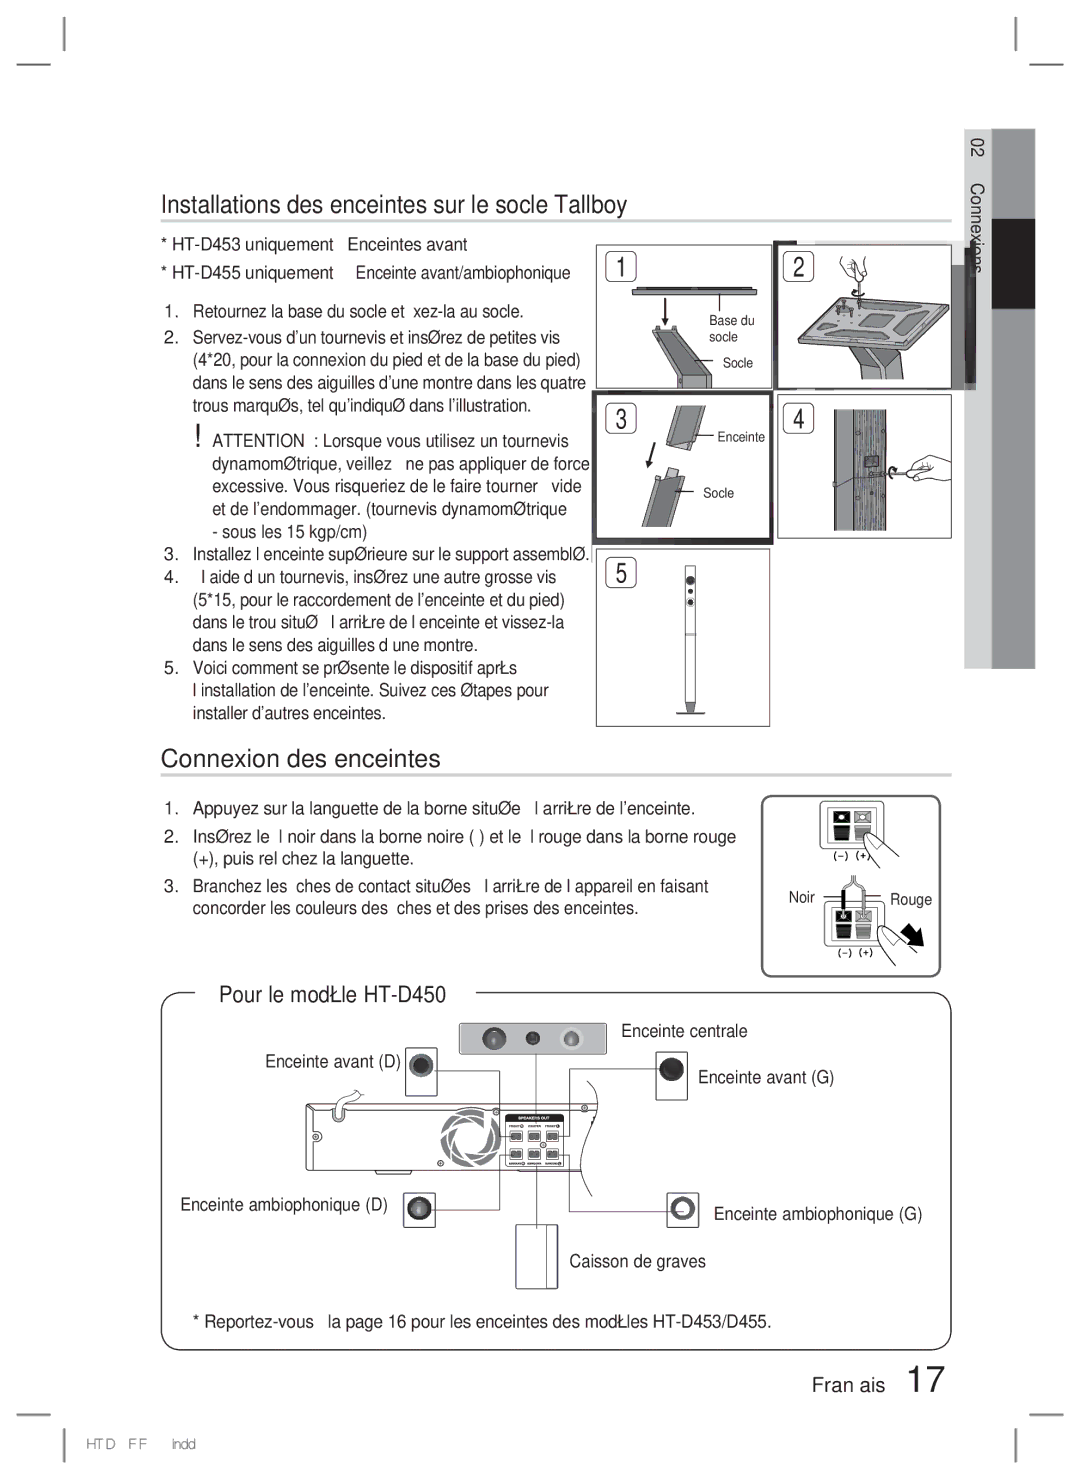 Samsung HT-D455/ZF manual Installations des enceintes sur le socle Tallboy, Connexion des enceintes, Pour le modèle HT-D450 